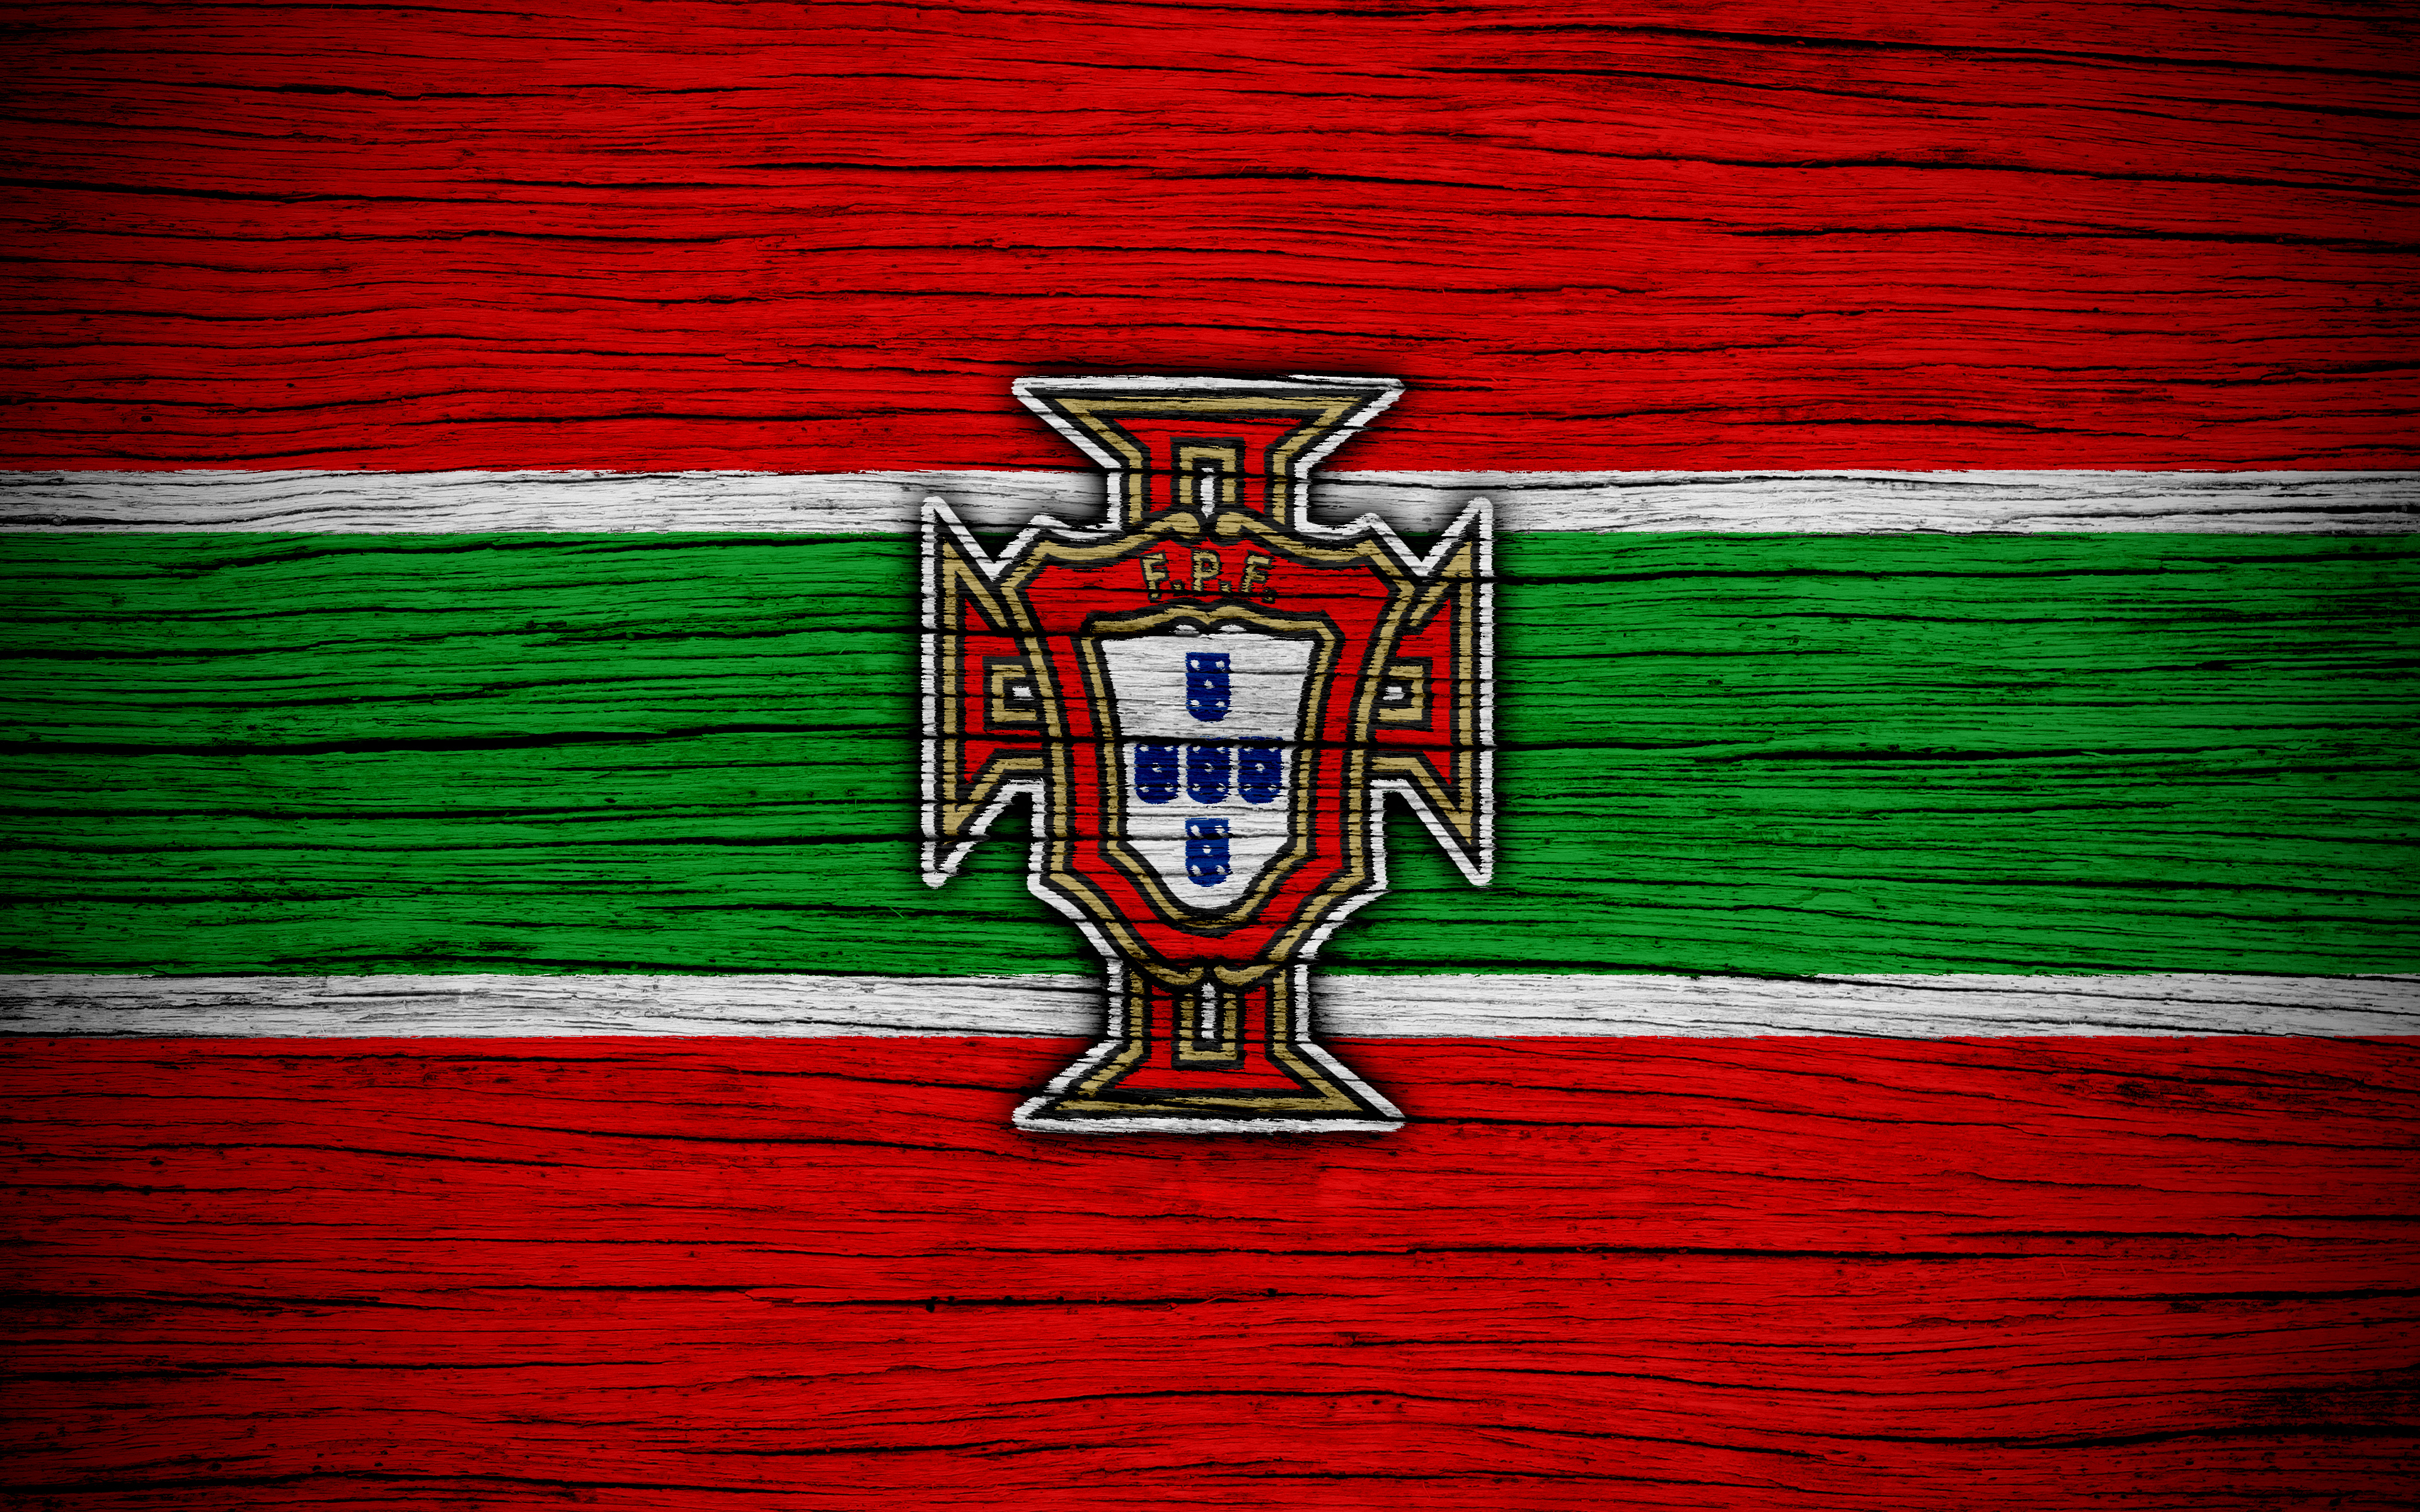 1531475 Обои и Сборная Португалии По Футболу картинки на рабочий стол. Скачать  заставки на ПК бесплатно